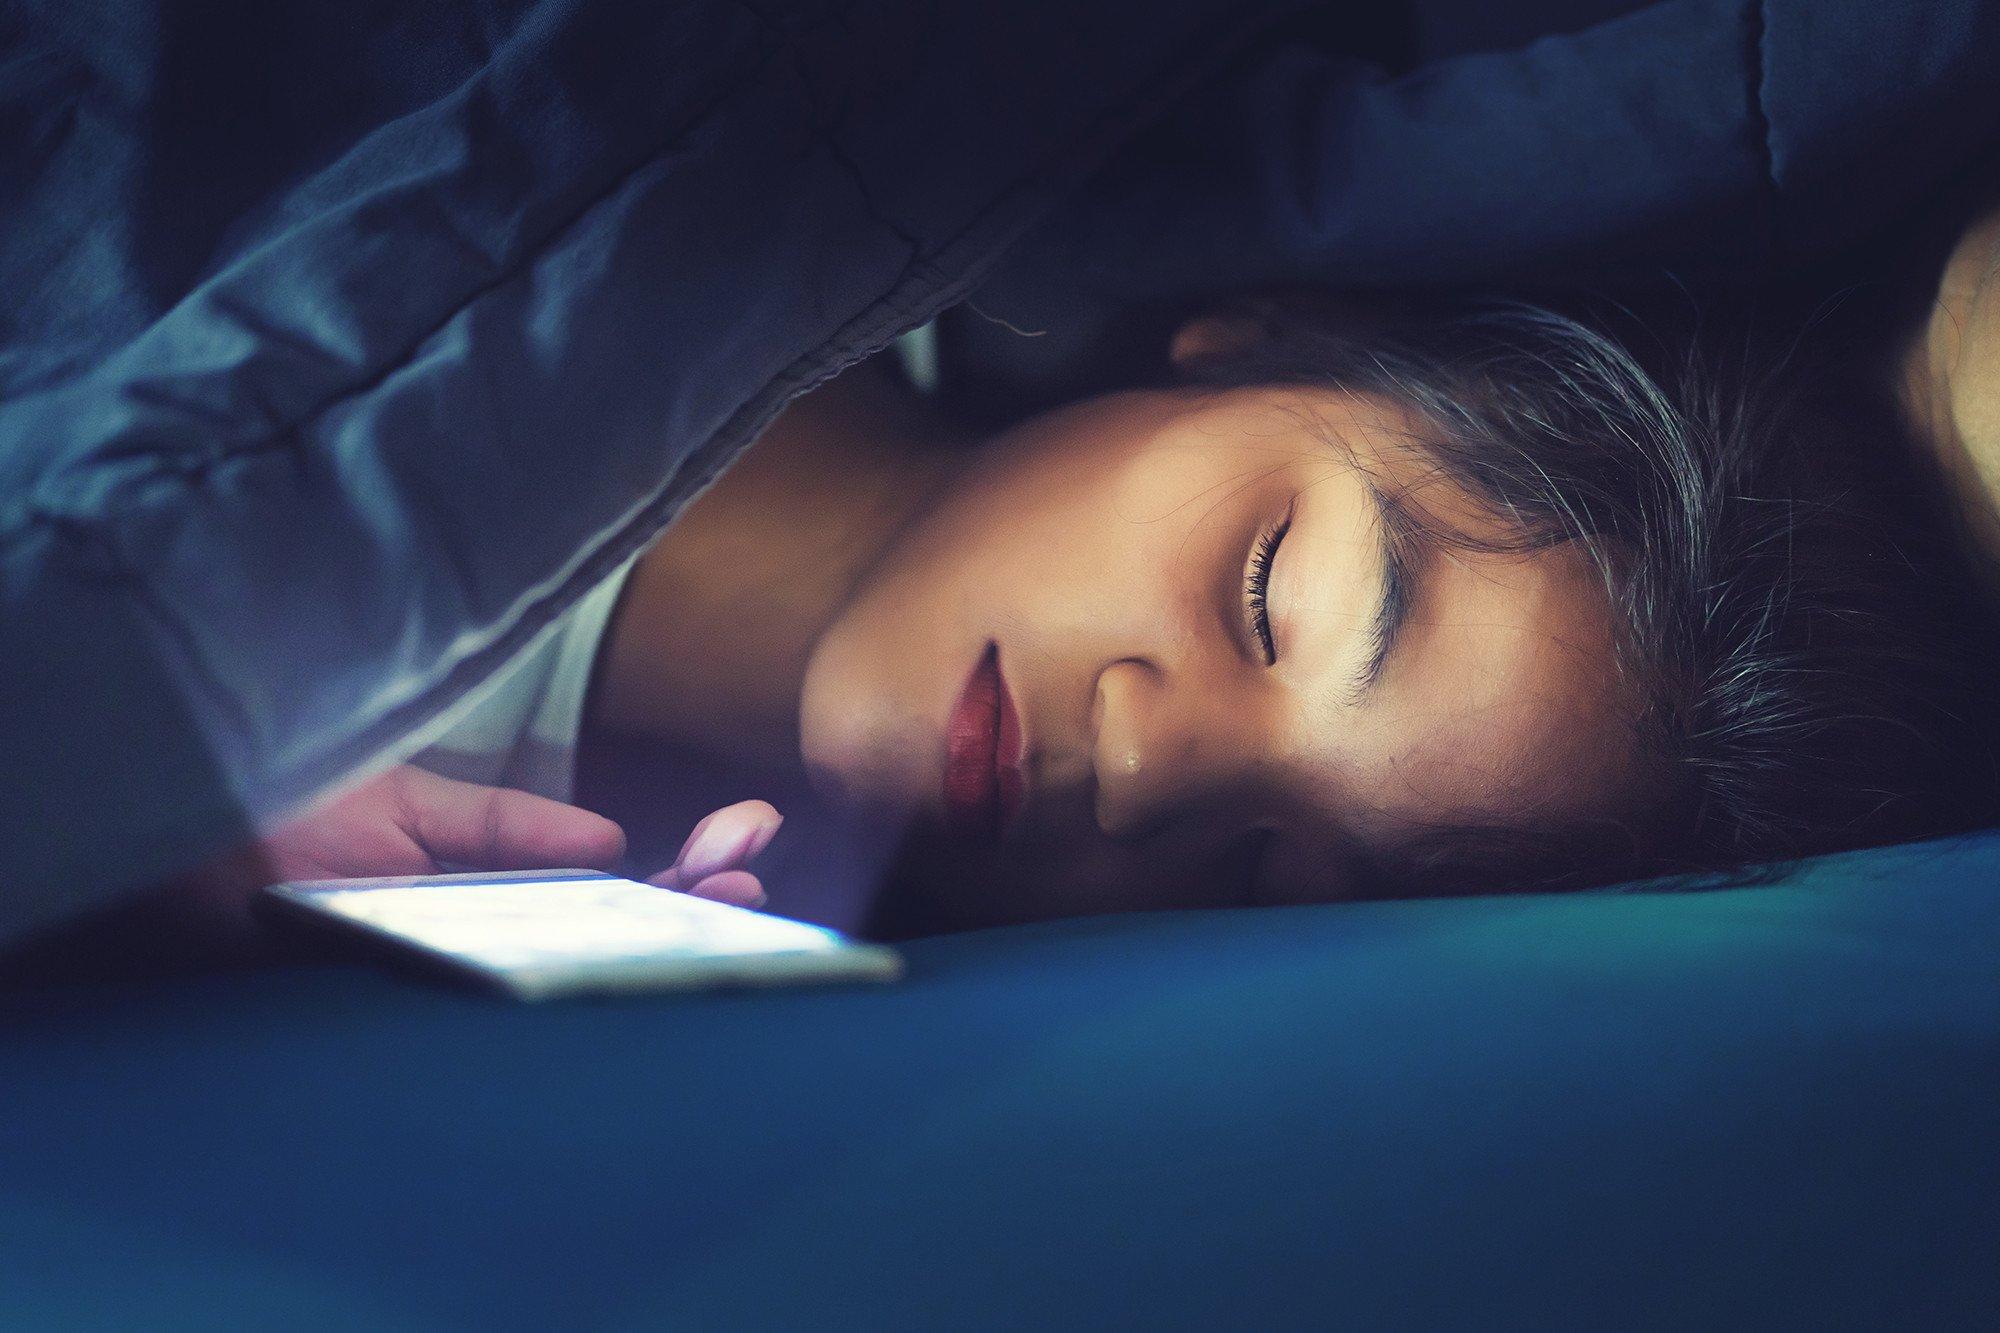 Sử dụng điện thoại có màn hình OLED trước khi ngủ sẽ làm các tác hại nghiêm trọng hơn. Ảnh: internet